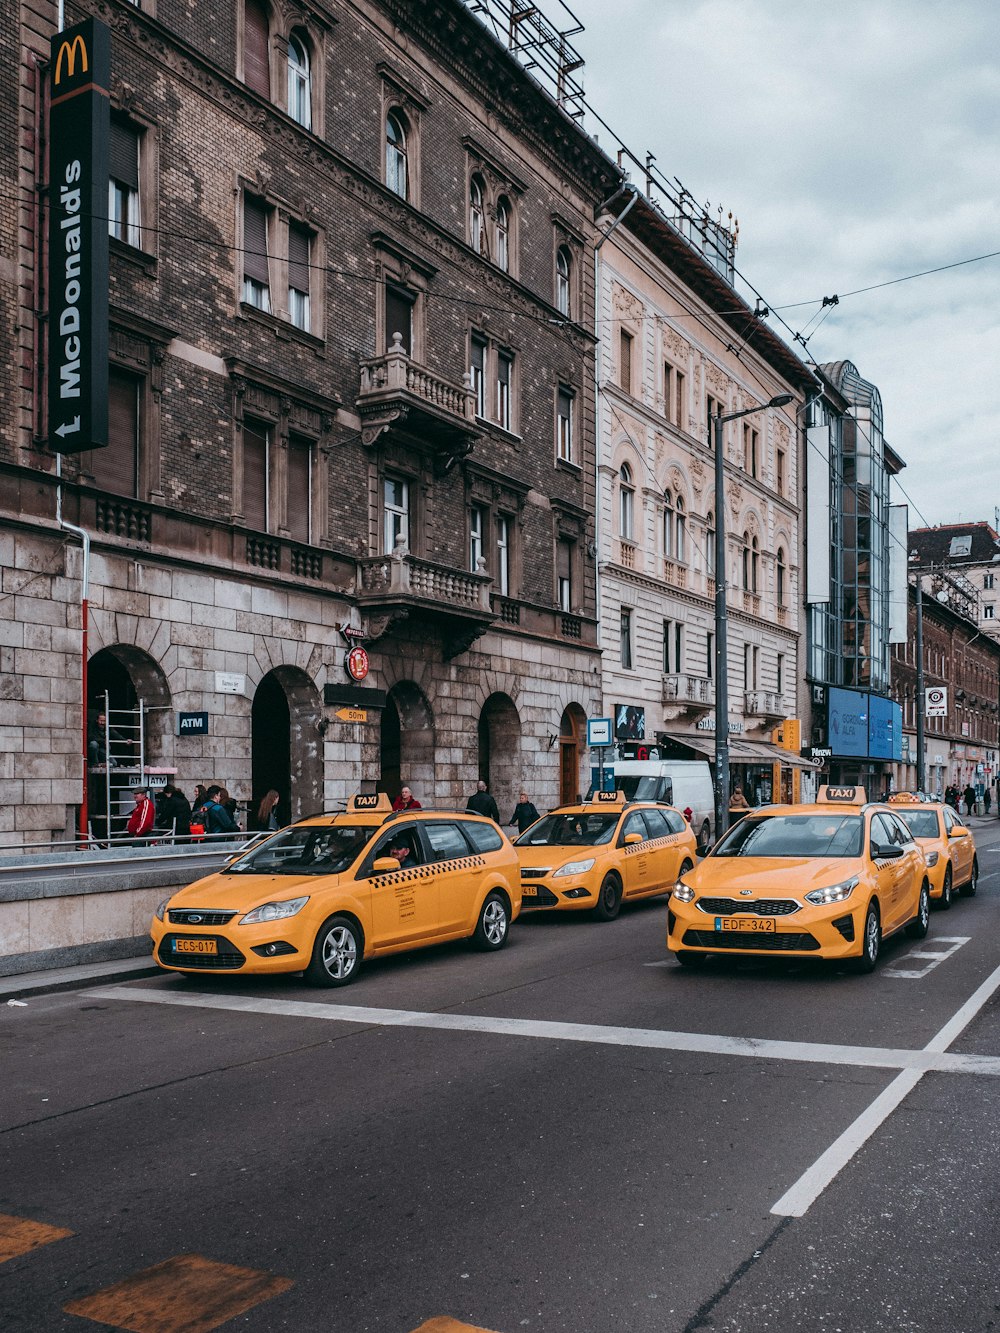 táxi amarelo na rua durante o dia